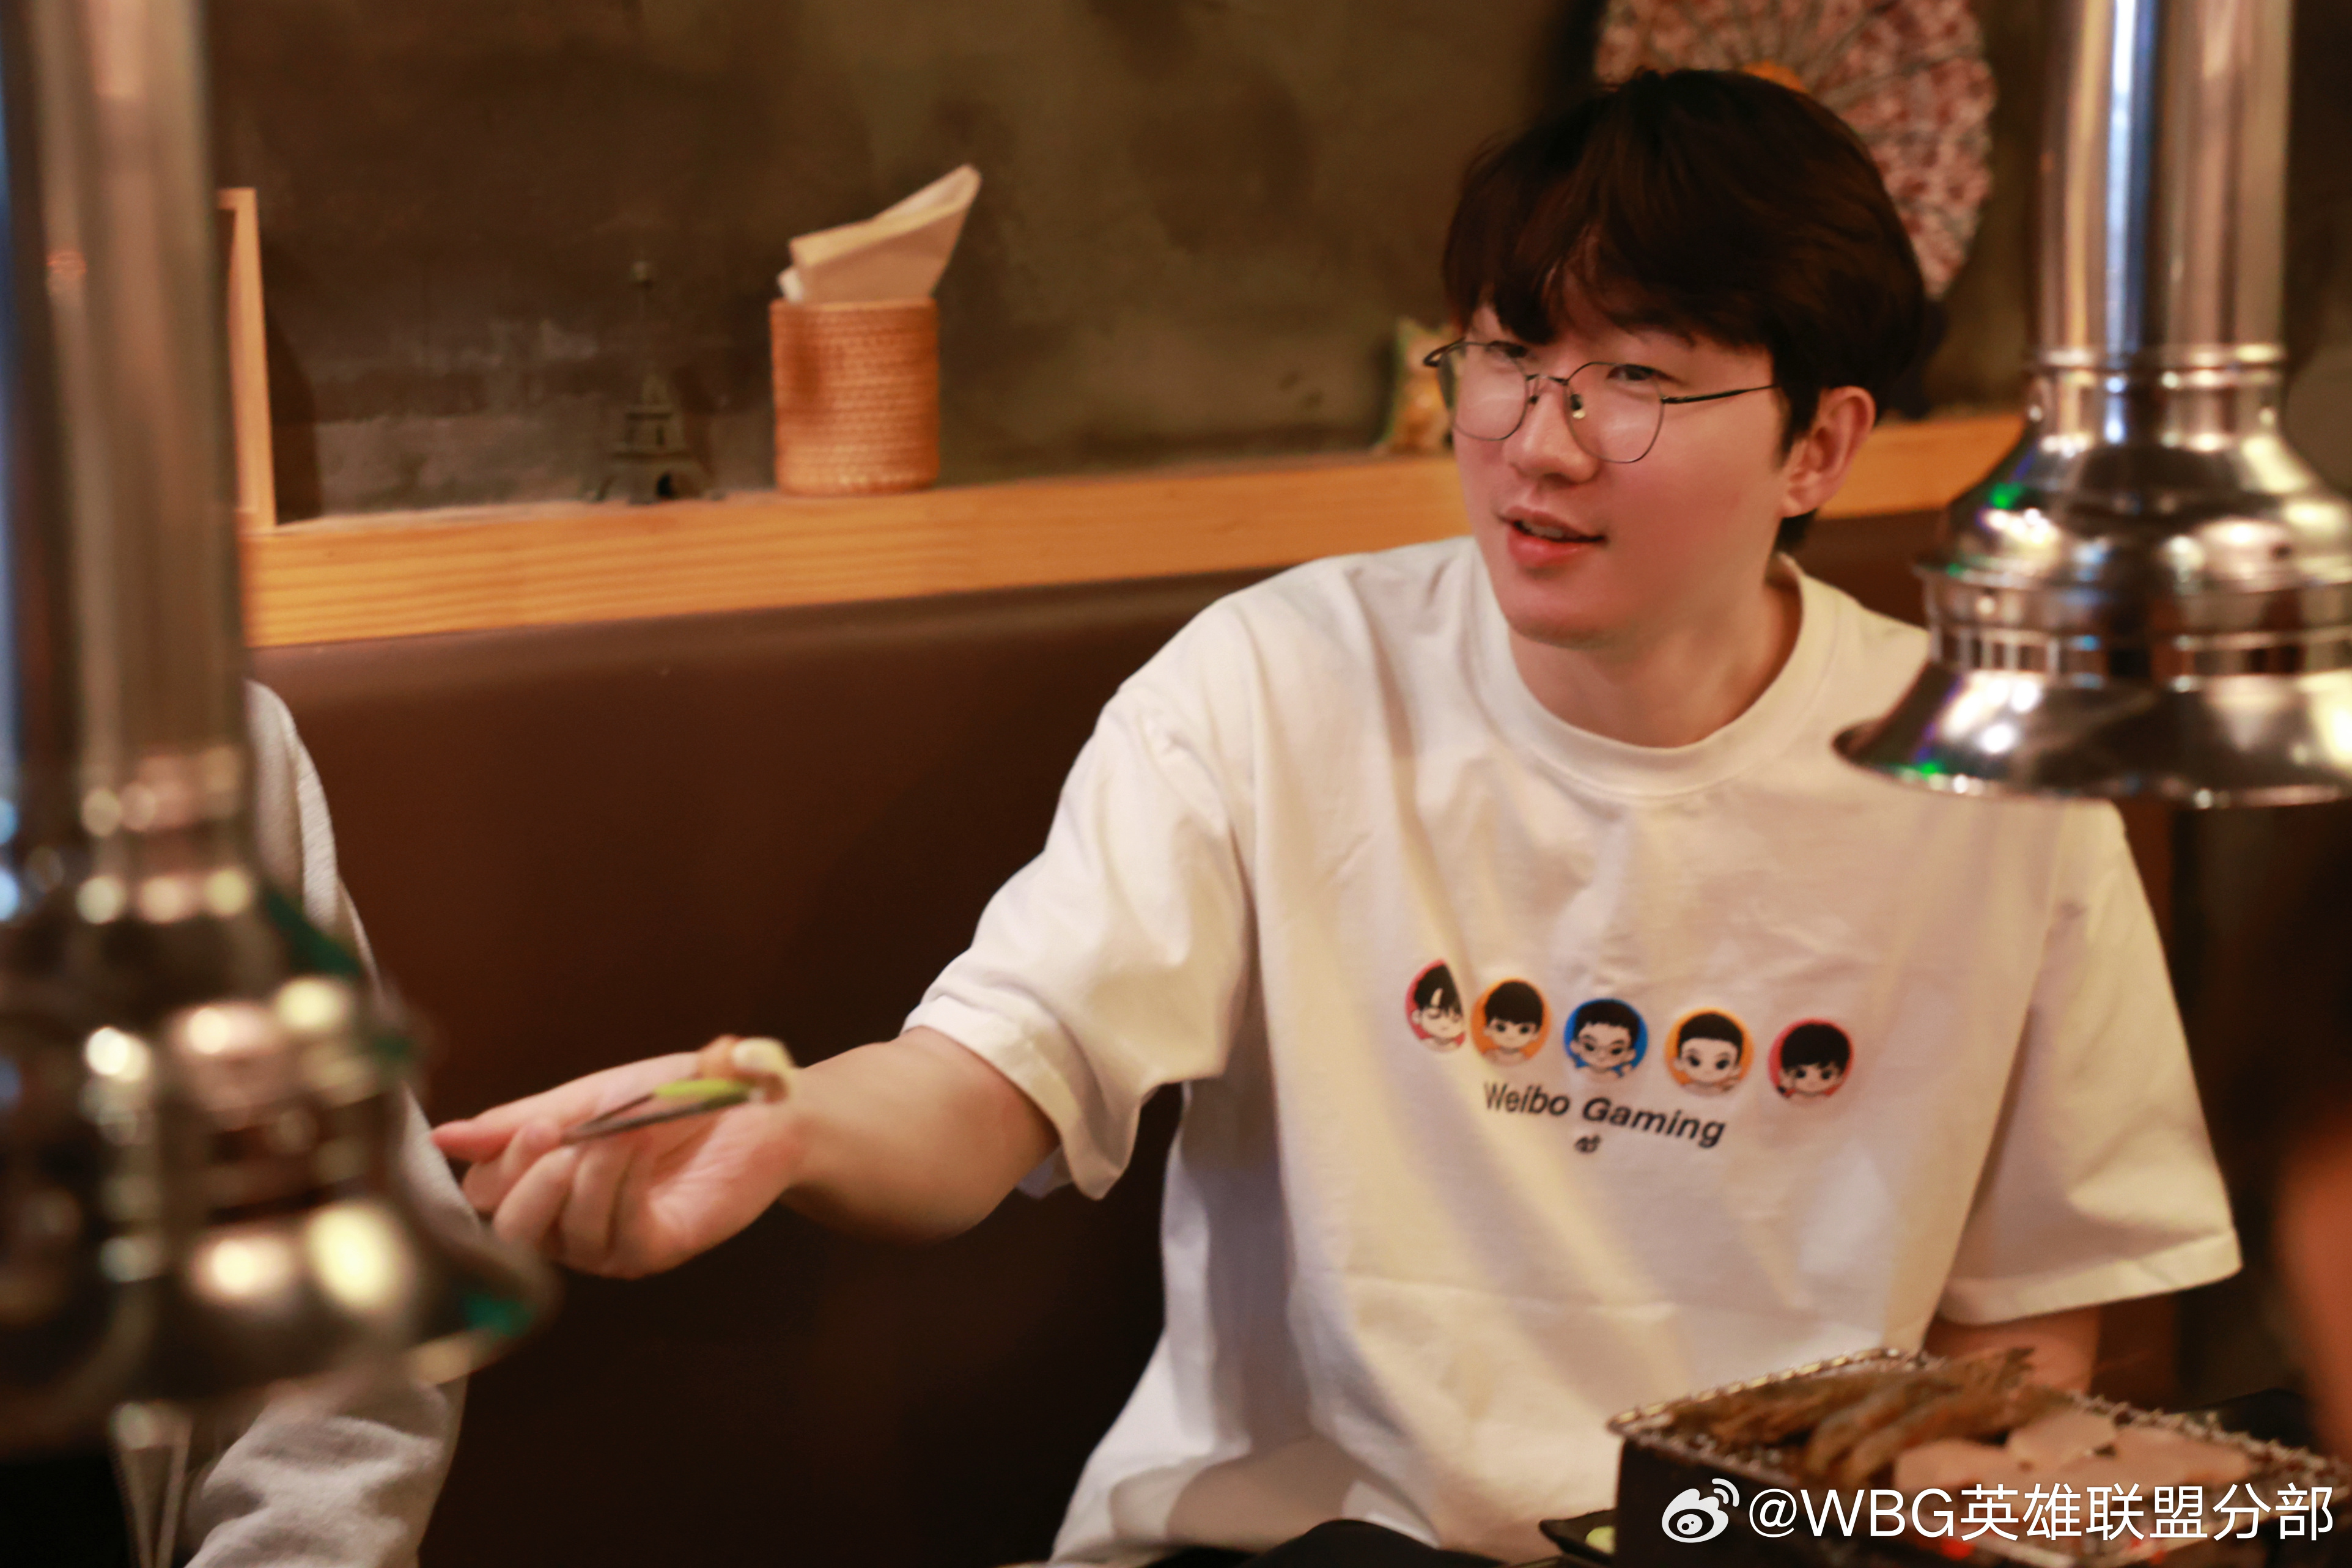 WBG分享选手们一起吃韩国烤肉：下完训练赛的哥几个吃和牛